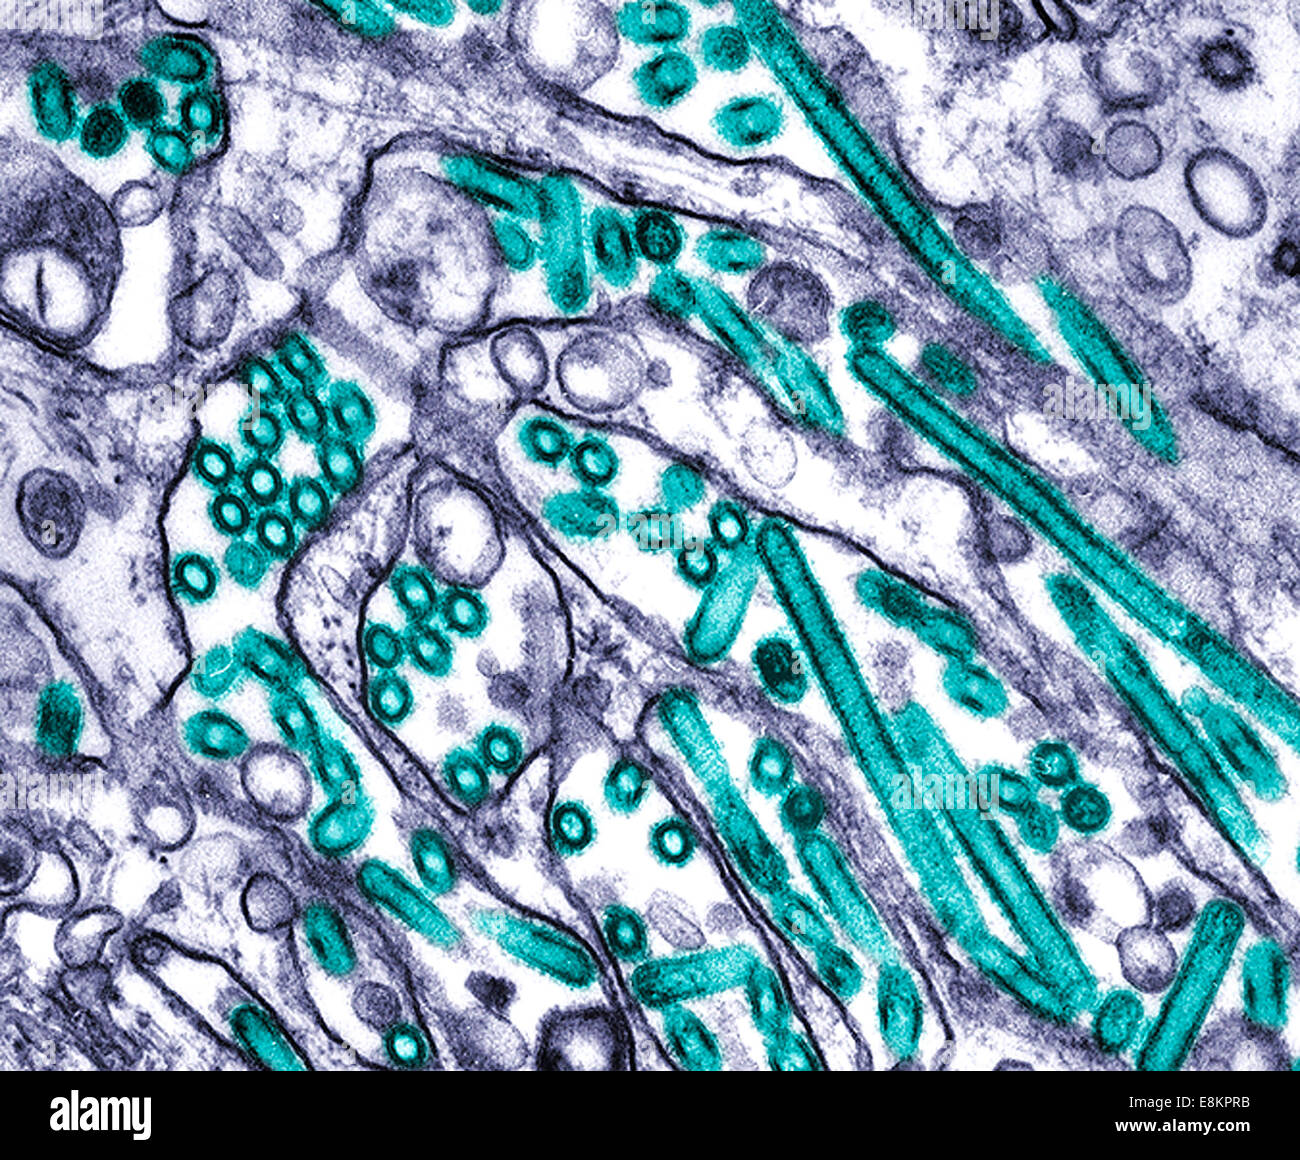 Colorizzato micrografia elettronica a trasmissione dell'influenza aviaria H5N1 virus coltivati in cellule MDCK i virus dell'influenza aviaria non Foto Stock